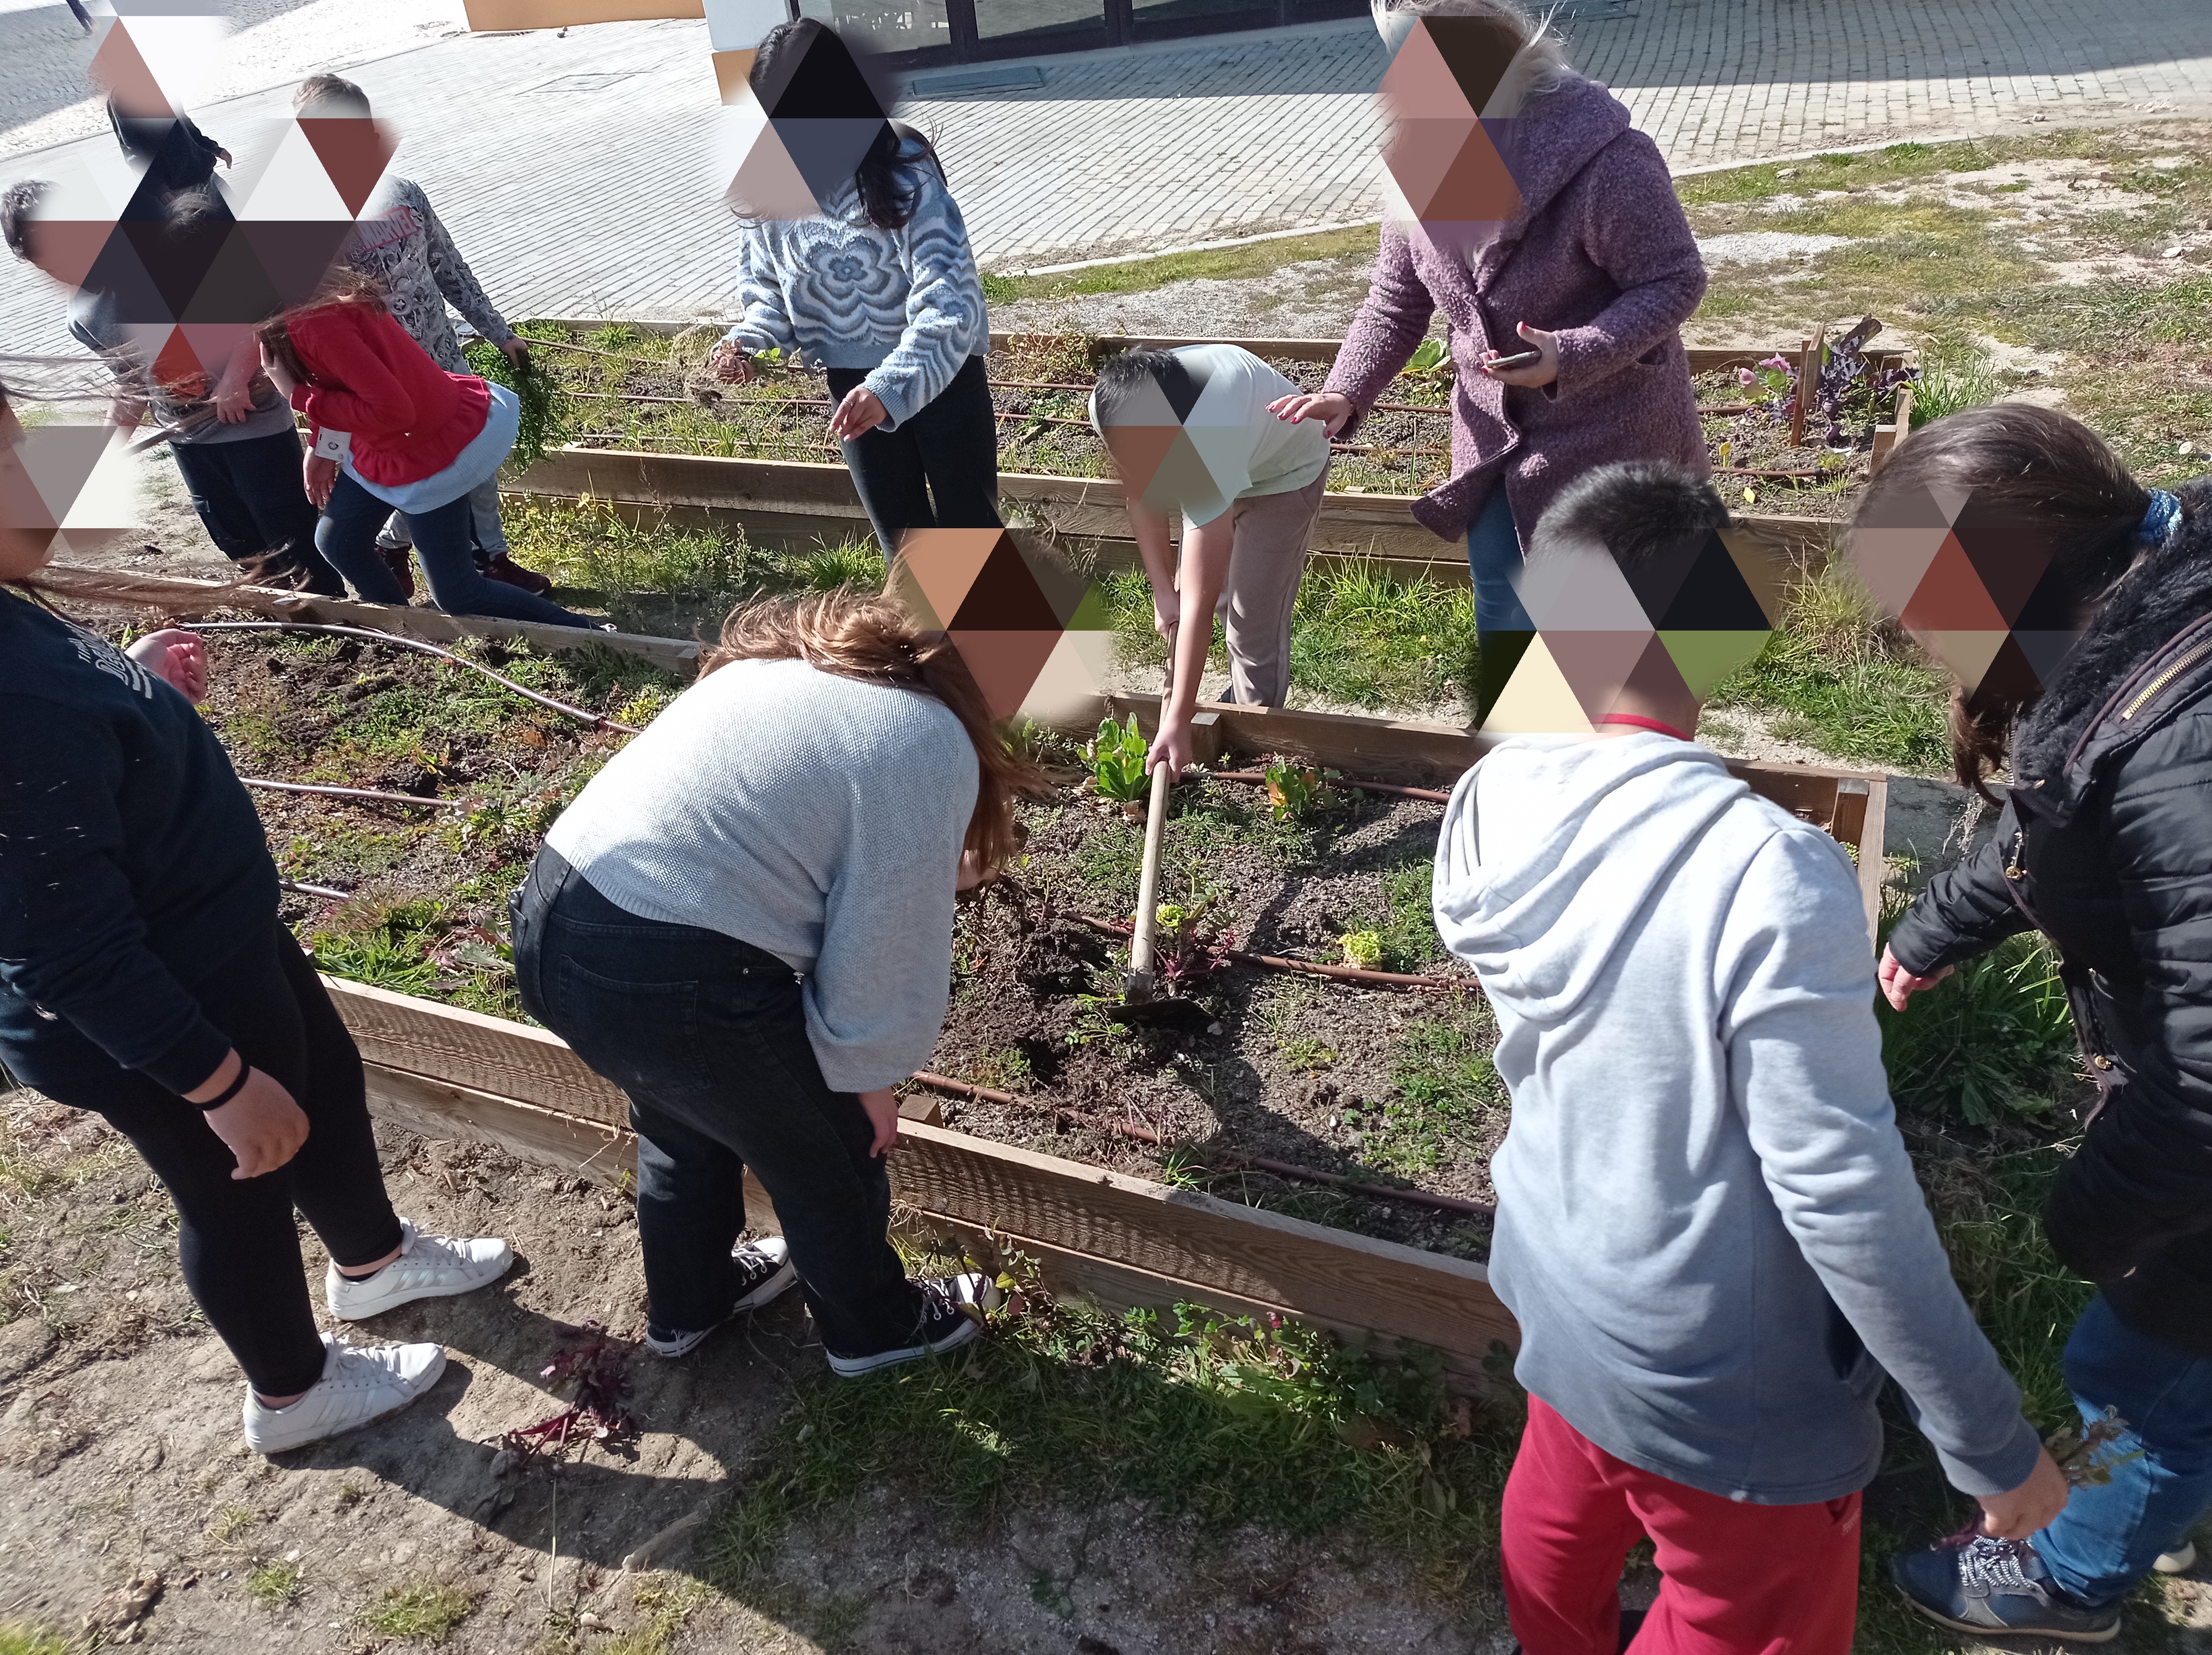 Preparação da horta
Os alunos removeram as ervas daninhas e prepararam o terreno para plantarem produtos da época.